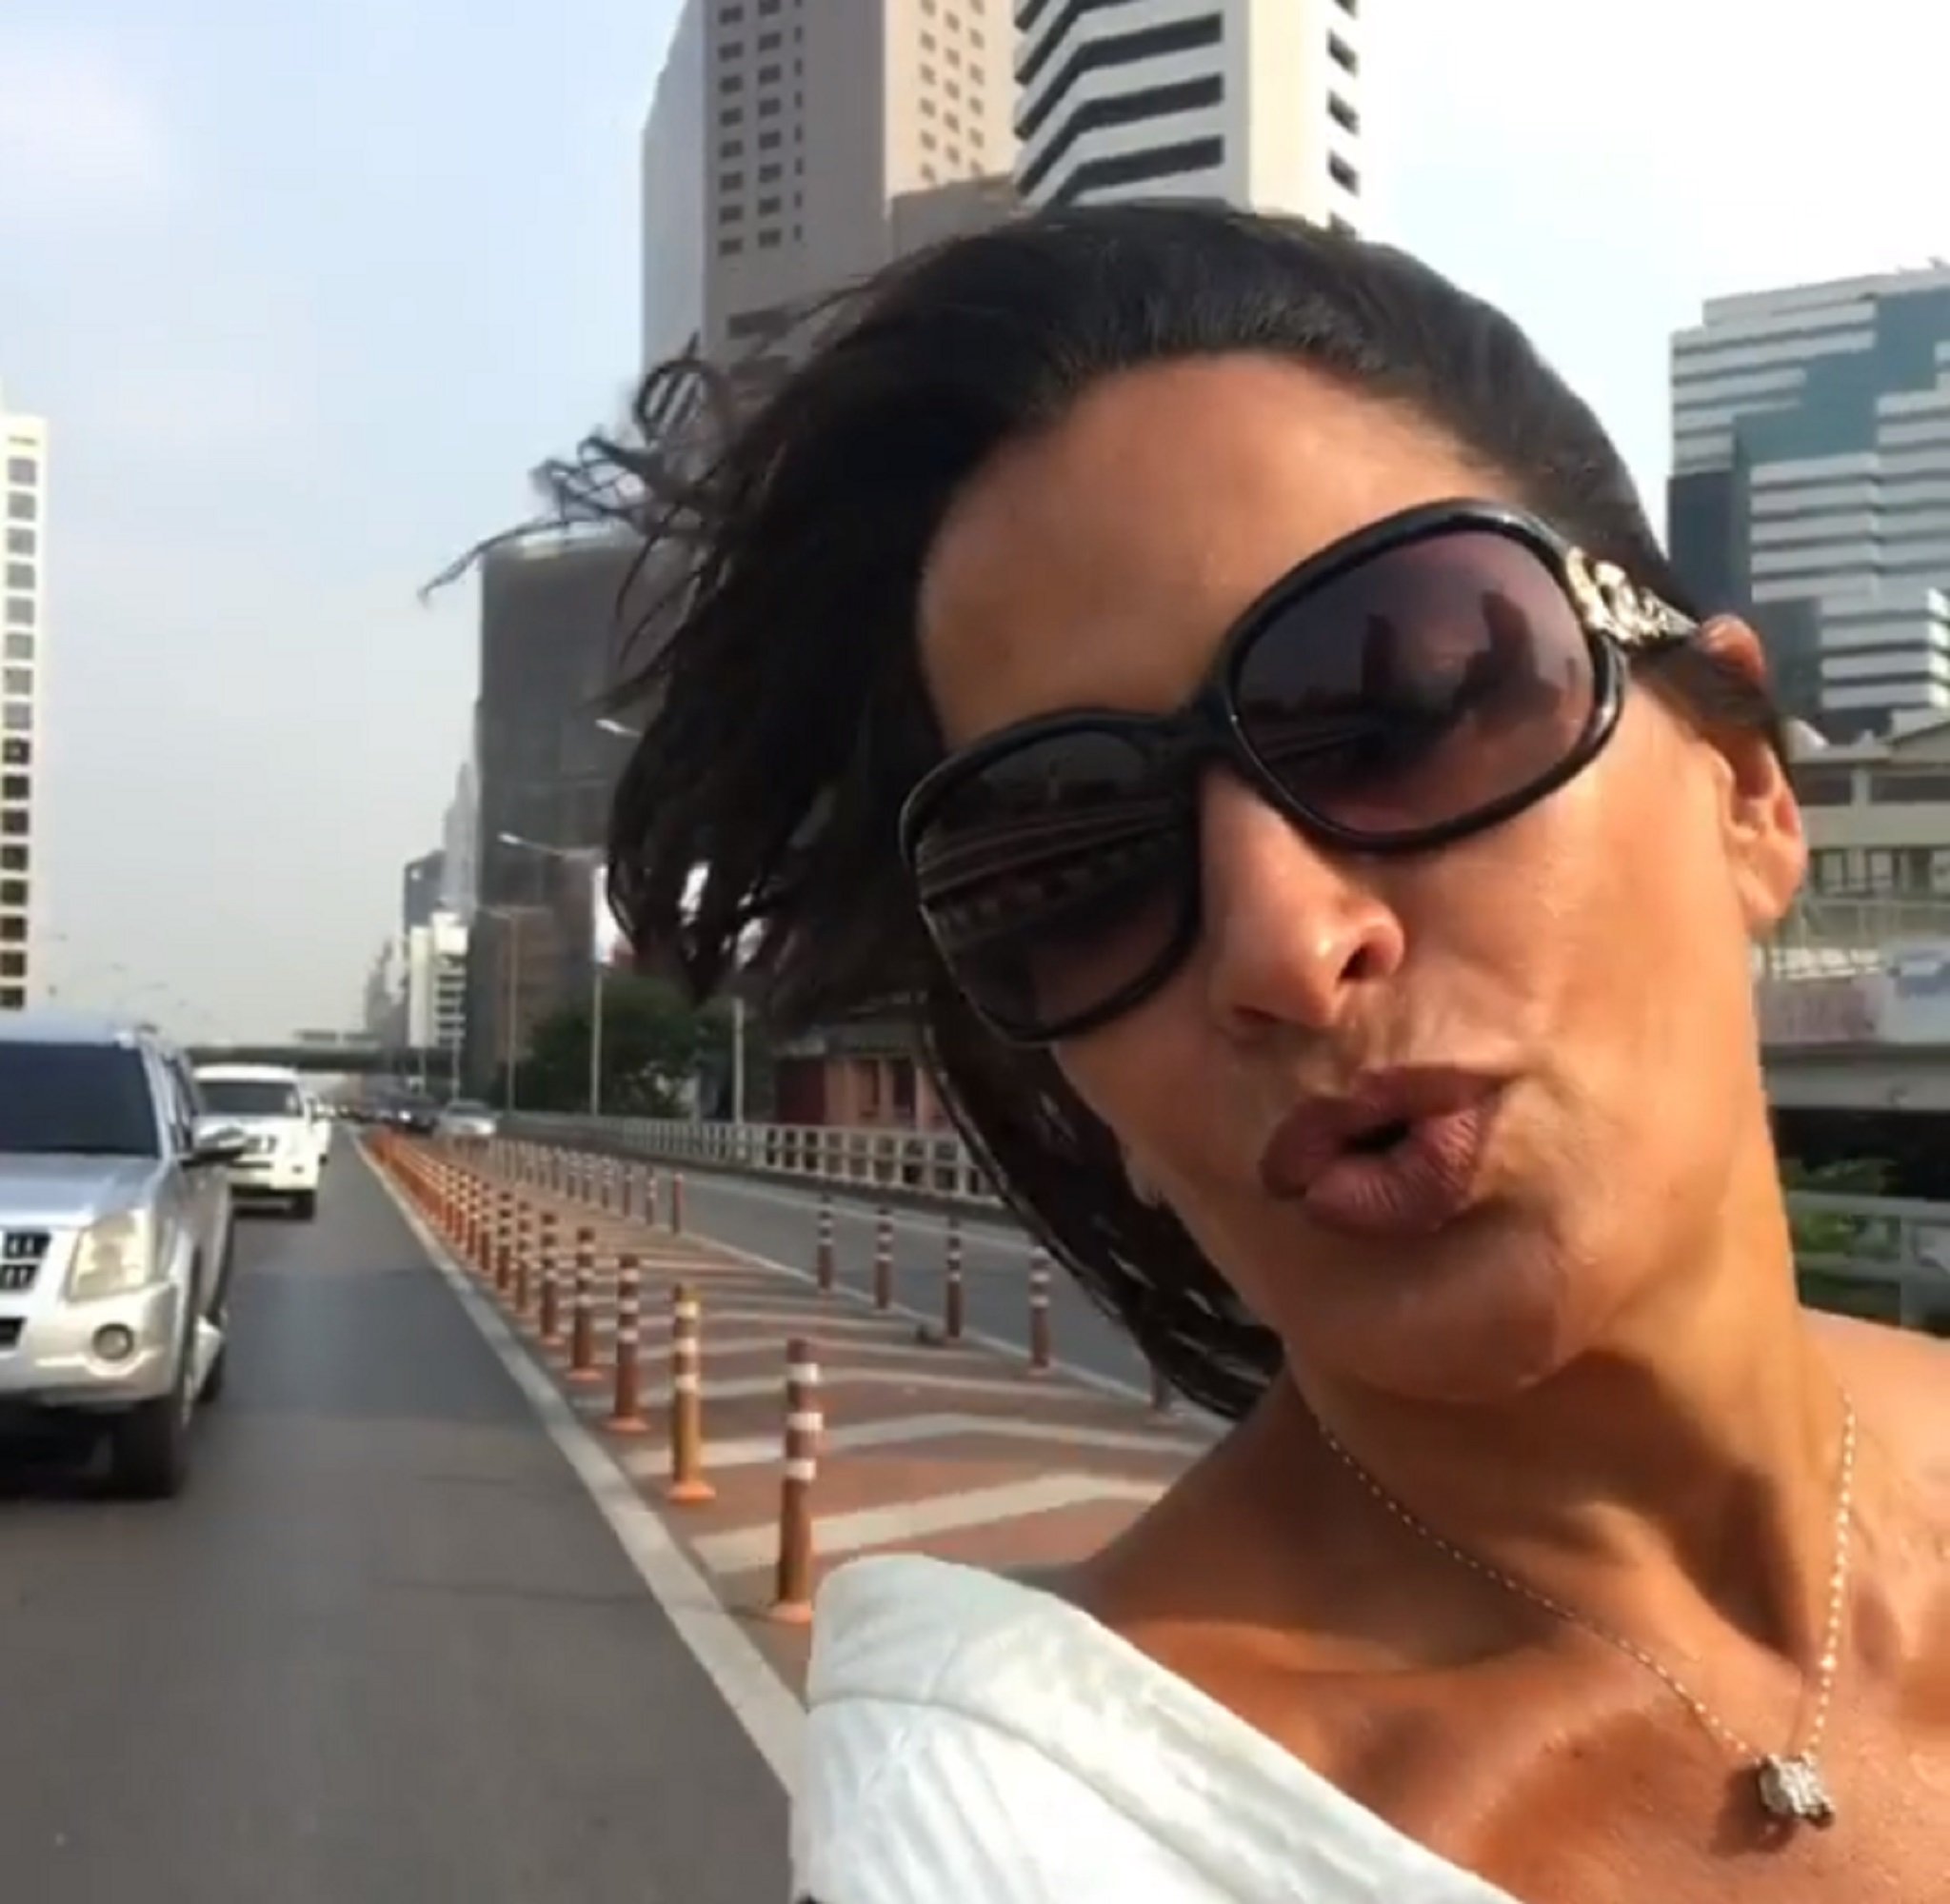 Aída Nizar queda en ridículo al filtrarse un vídeo suyo cayendo de la moto